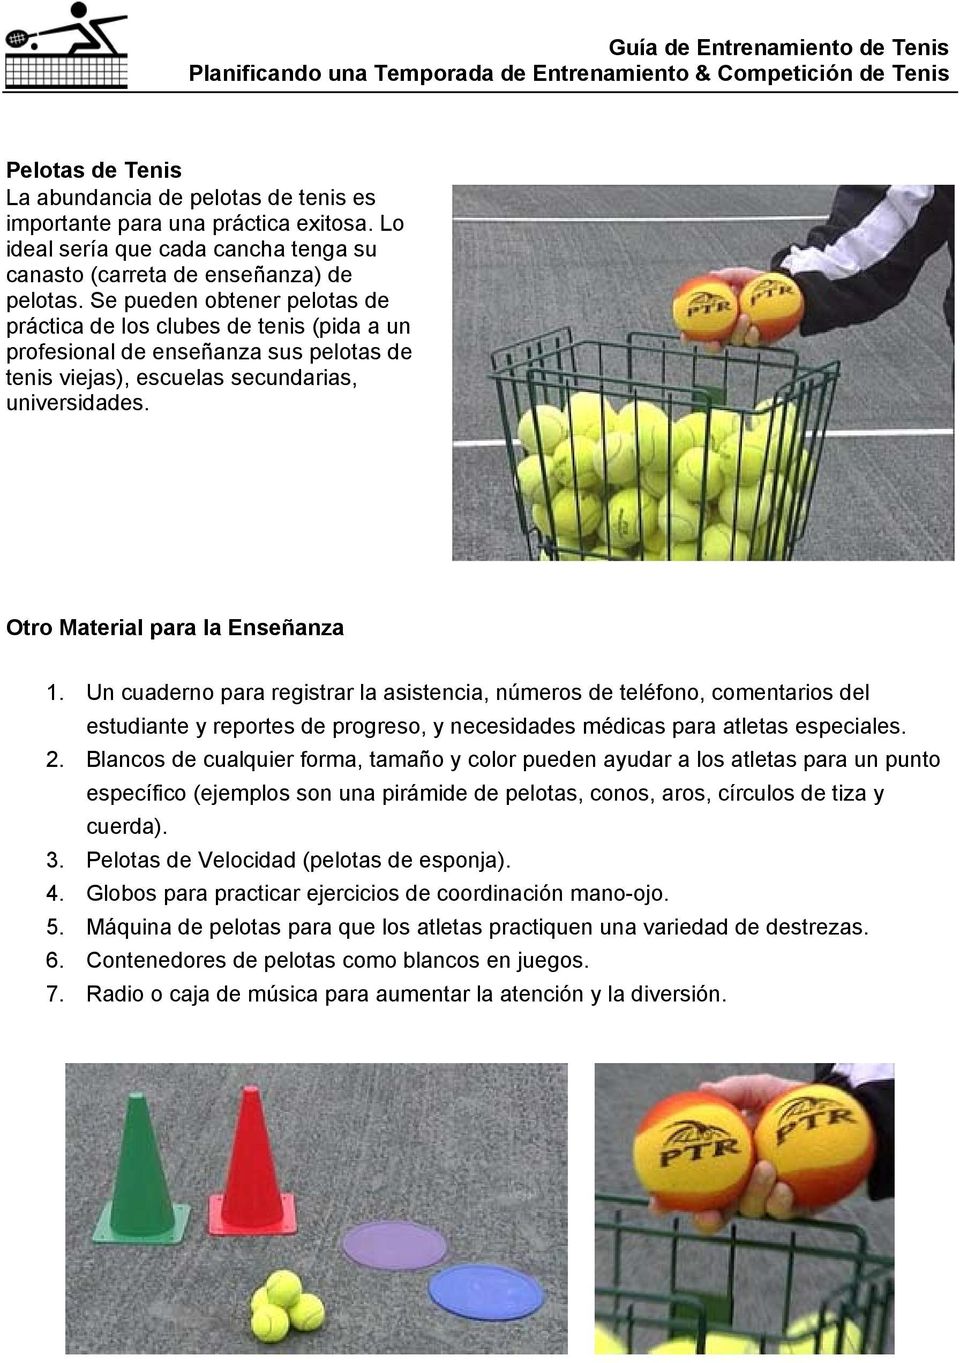 Se pueden obtener pelotas de práctica de los clubes de tenis (pida a un profesional de enseñanza sus pelotas de tenis viejas), escuelas secundarias, universidades. Otro Material para la Enseñanza 1.